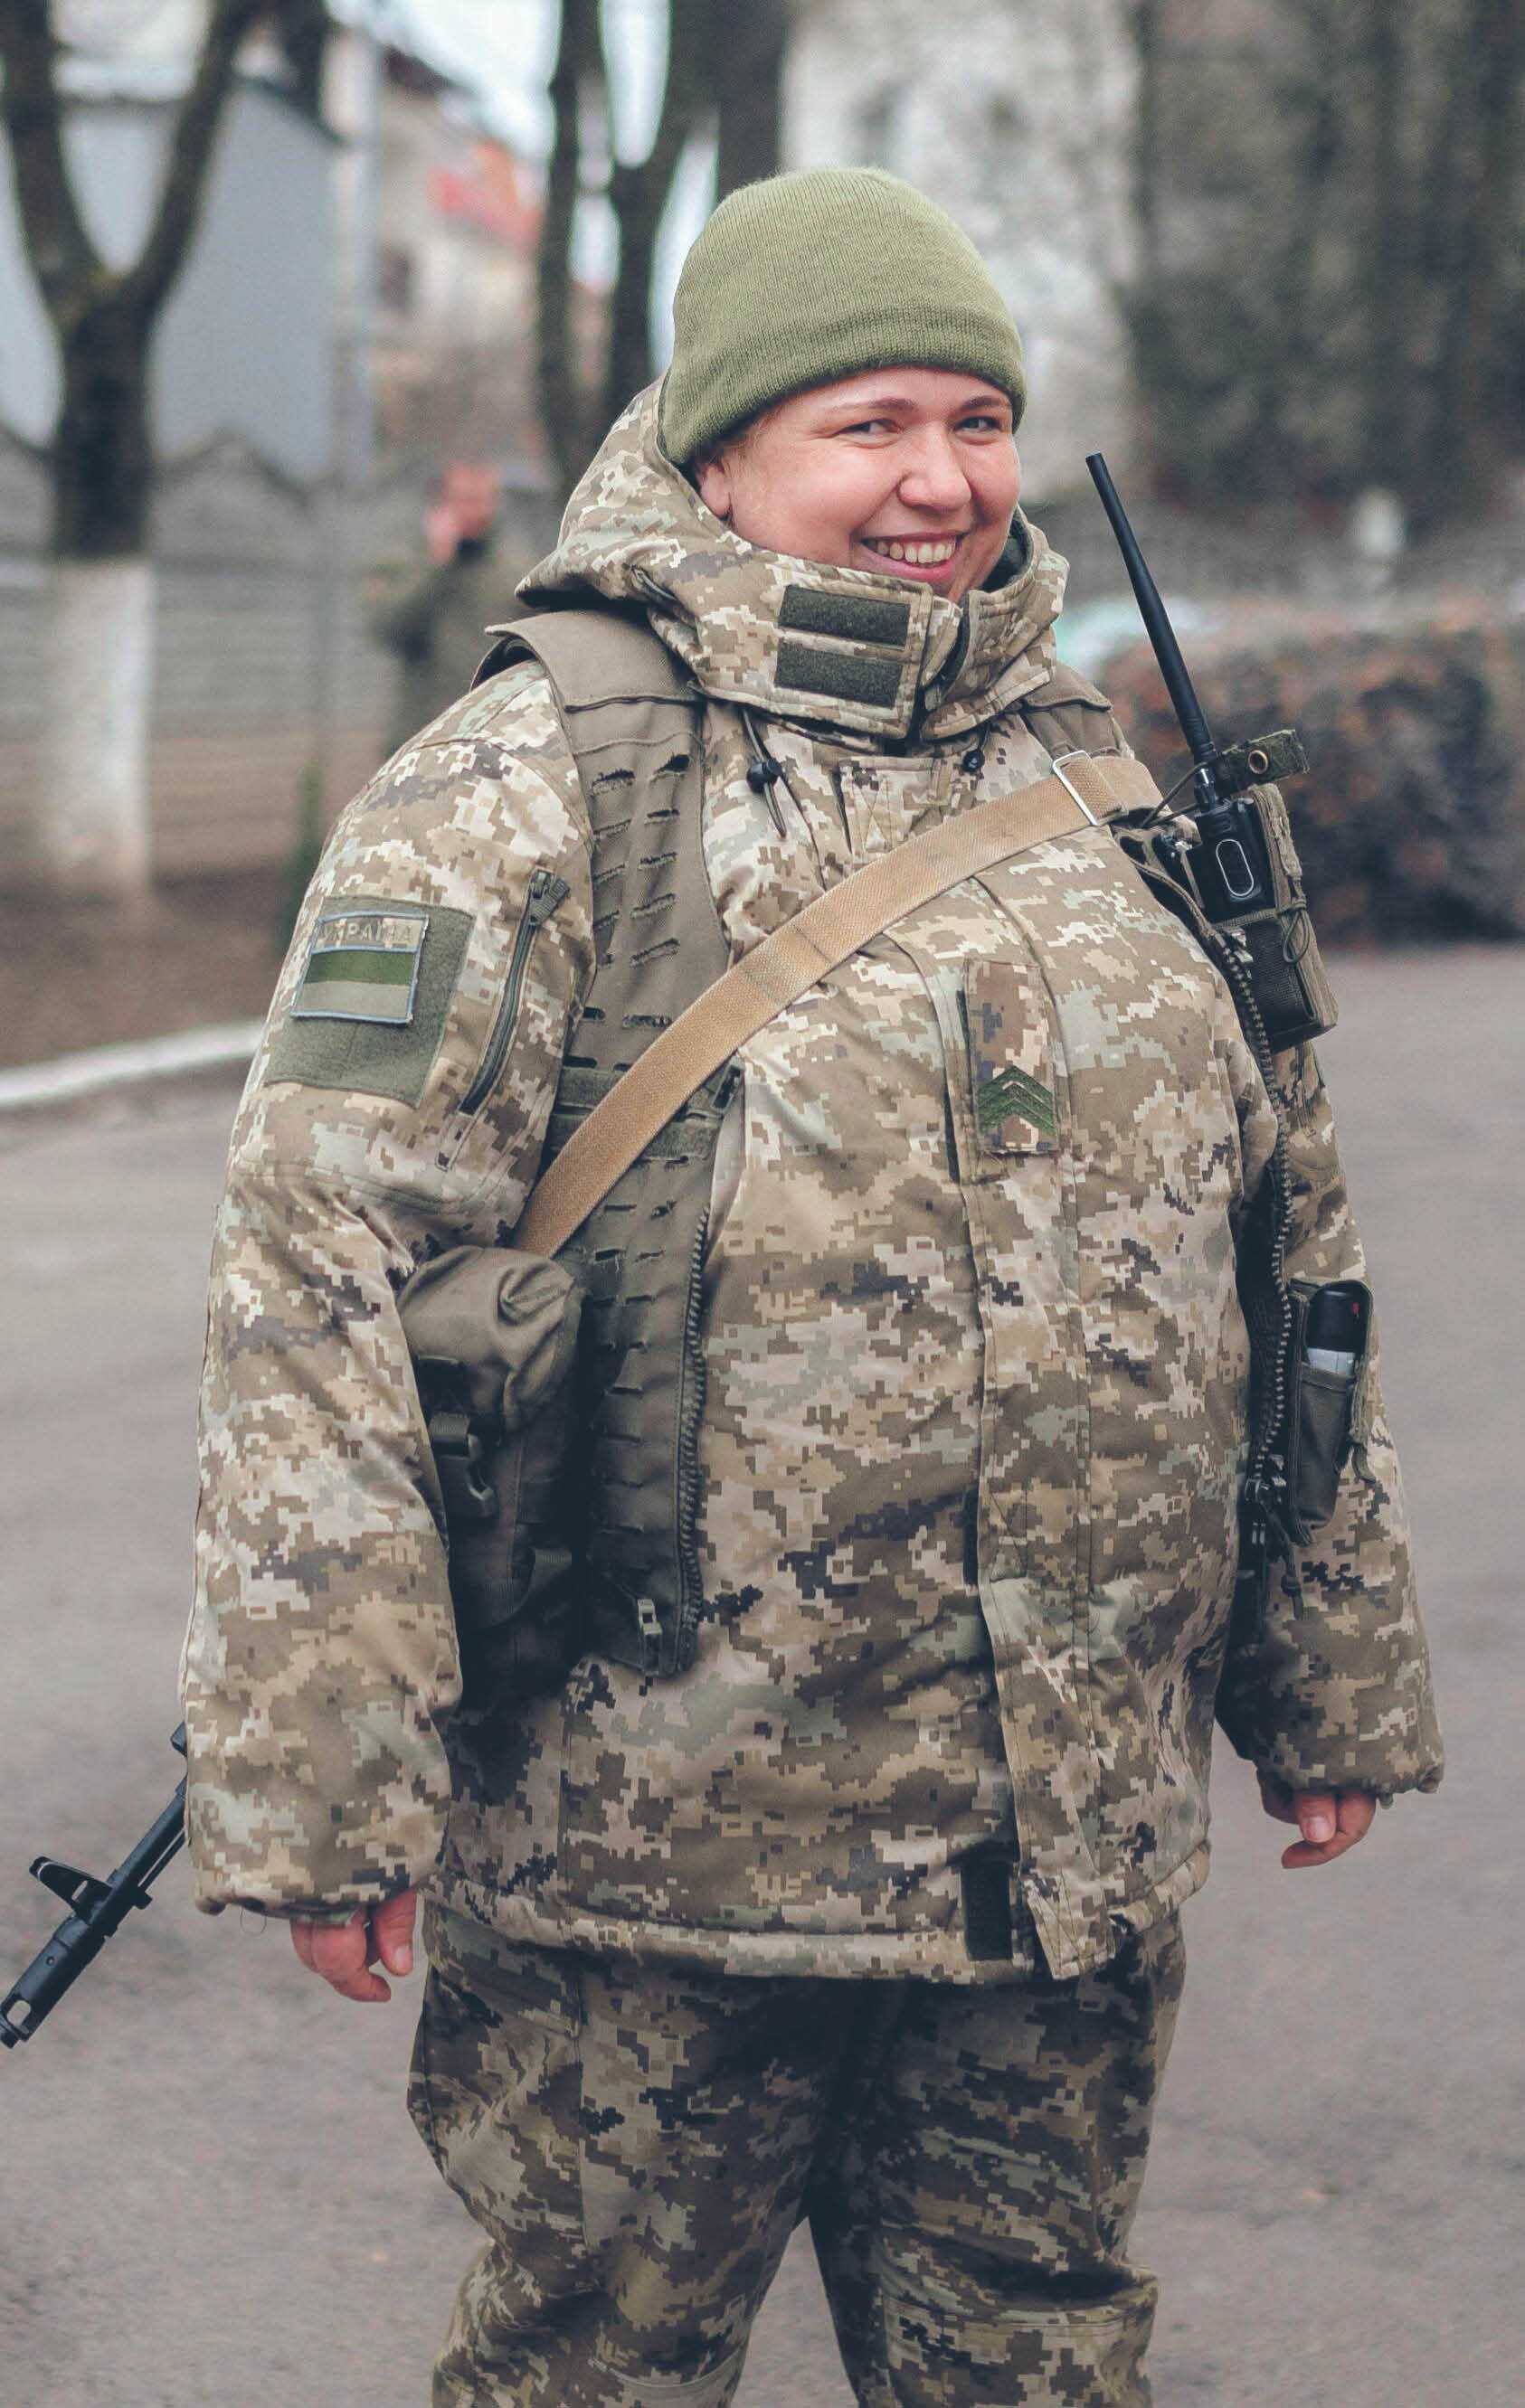 W ukraińskim wojsku służy obecnie kilkadziesiąt tysięcy kobiet, ale dopiero niedawno zaczęto przygotowywać żeńskie kroje mundurów. Brakuje też sprawnych procedur w przypadku oskarżeń o nadużycia seksualne